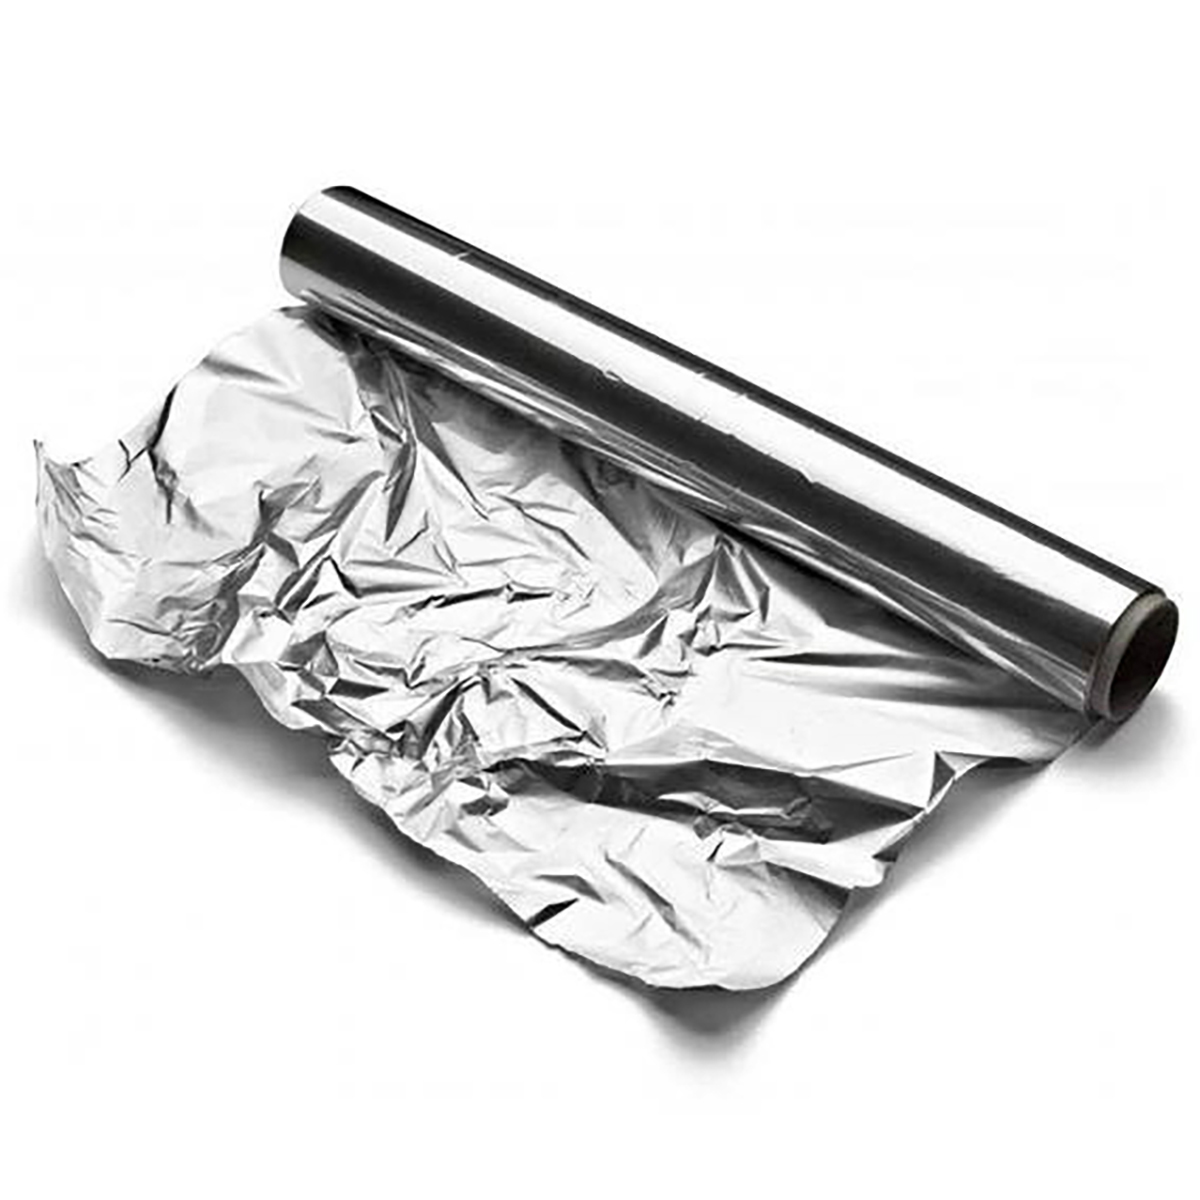 La feuille d'aluminium - pare-vapeur PA 2 - 1-verso papier laminé